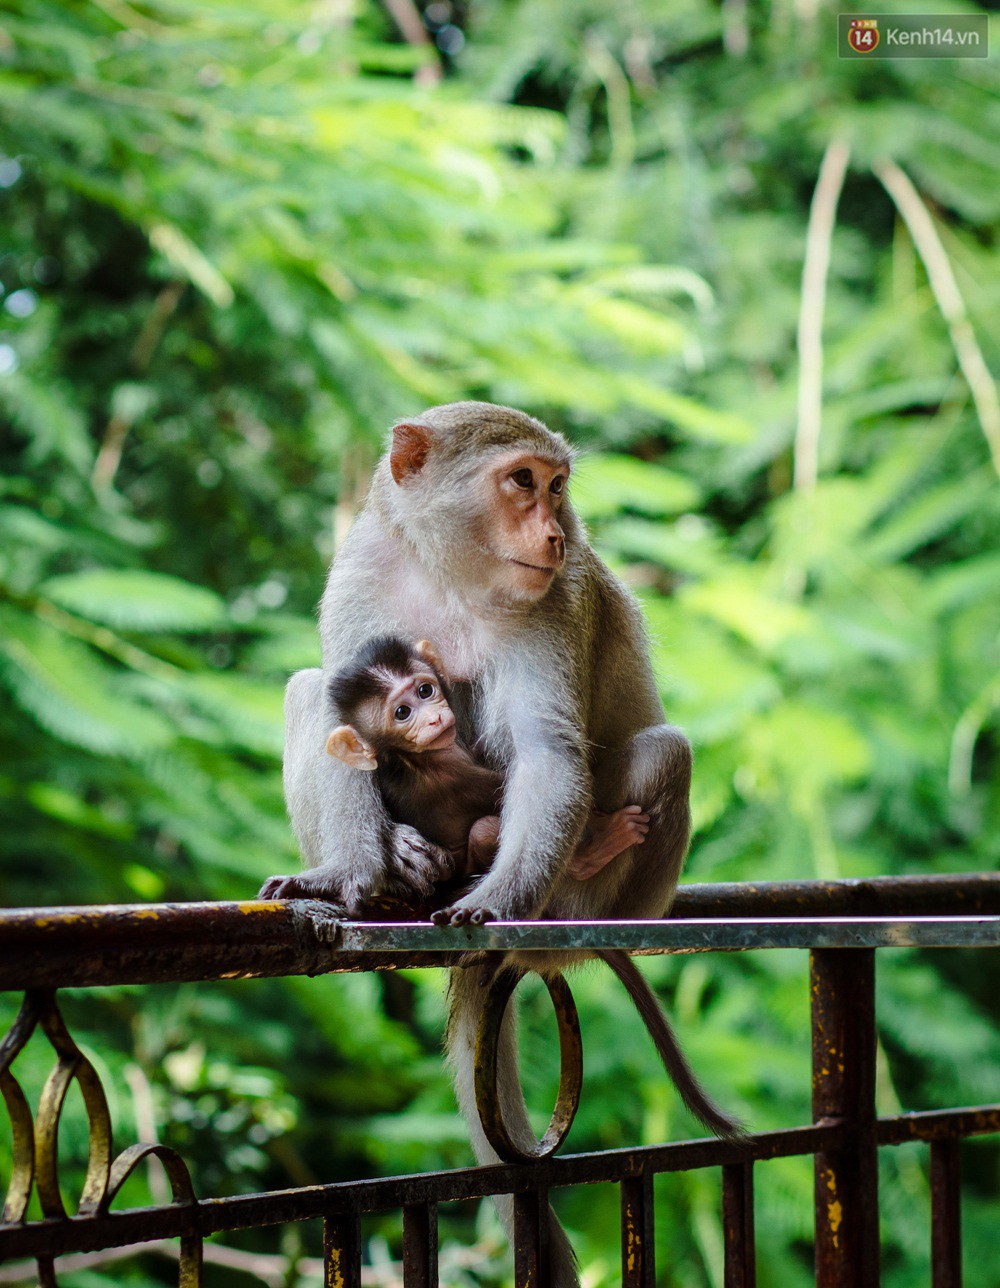 Chùm ảnh: Chuyện về đàn khỉ đuôi dài nương náu trong ngôi chùa ở Vũng Tàu, sống nhờ thức ăn của du khách - Ảnh 1.